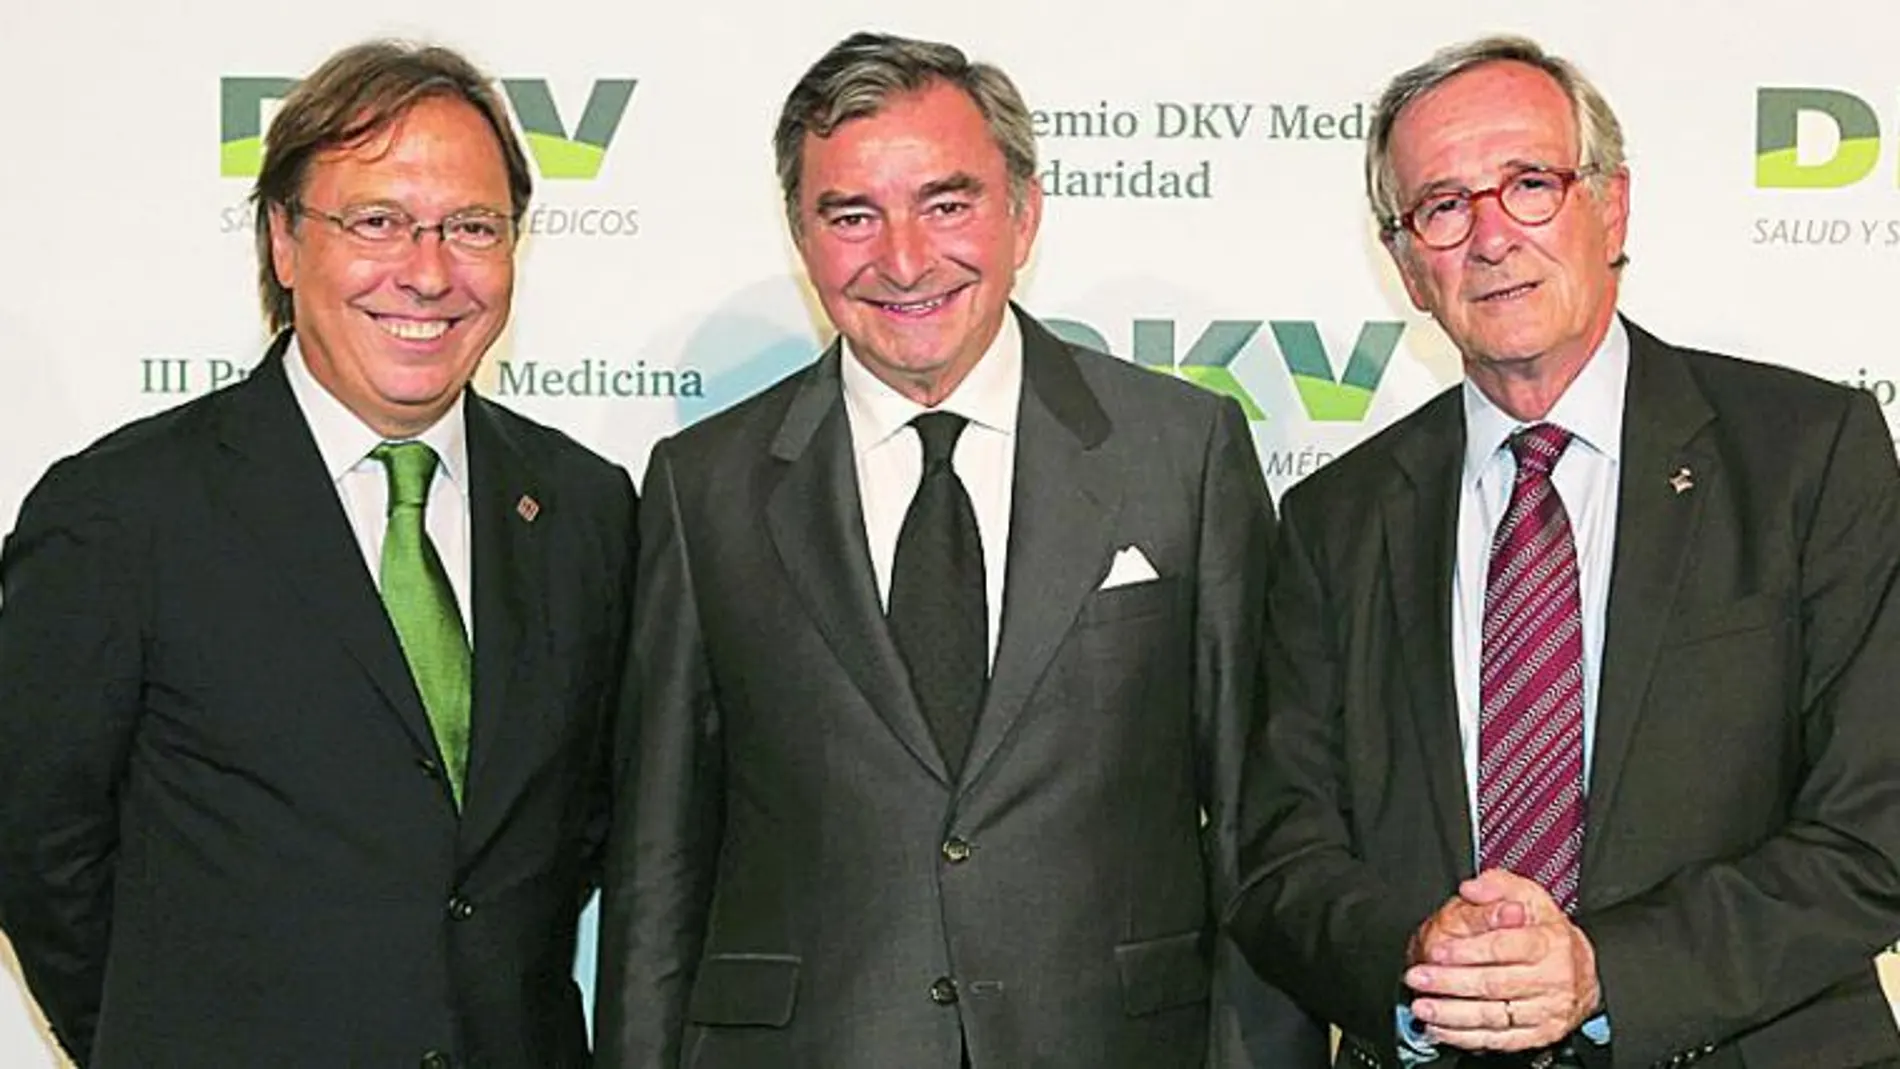 El Consejero delegado de DKV, el Dr. Josep Santacreu; junto con el Presidente de DKV, Javier Vega de Seoane; y Xavier Trias, Concejal del Ayuntamiento de Barcelona.